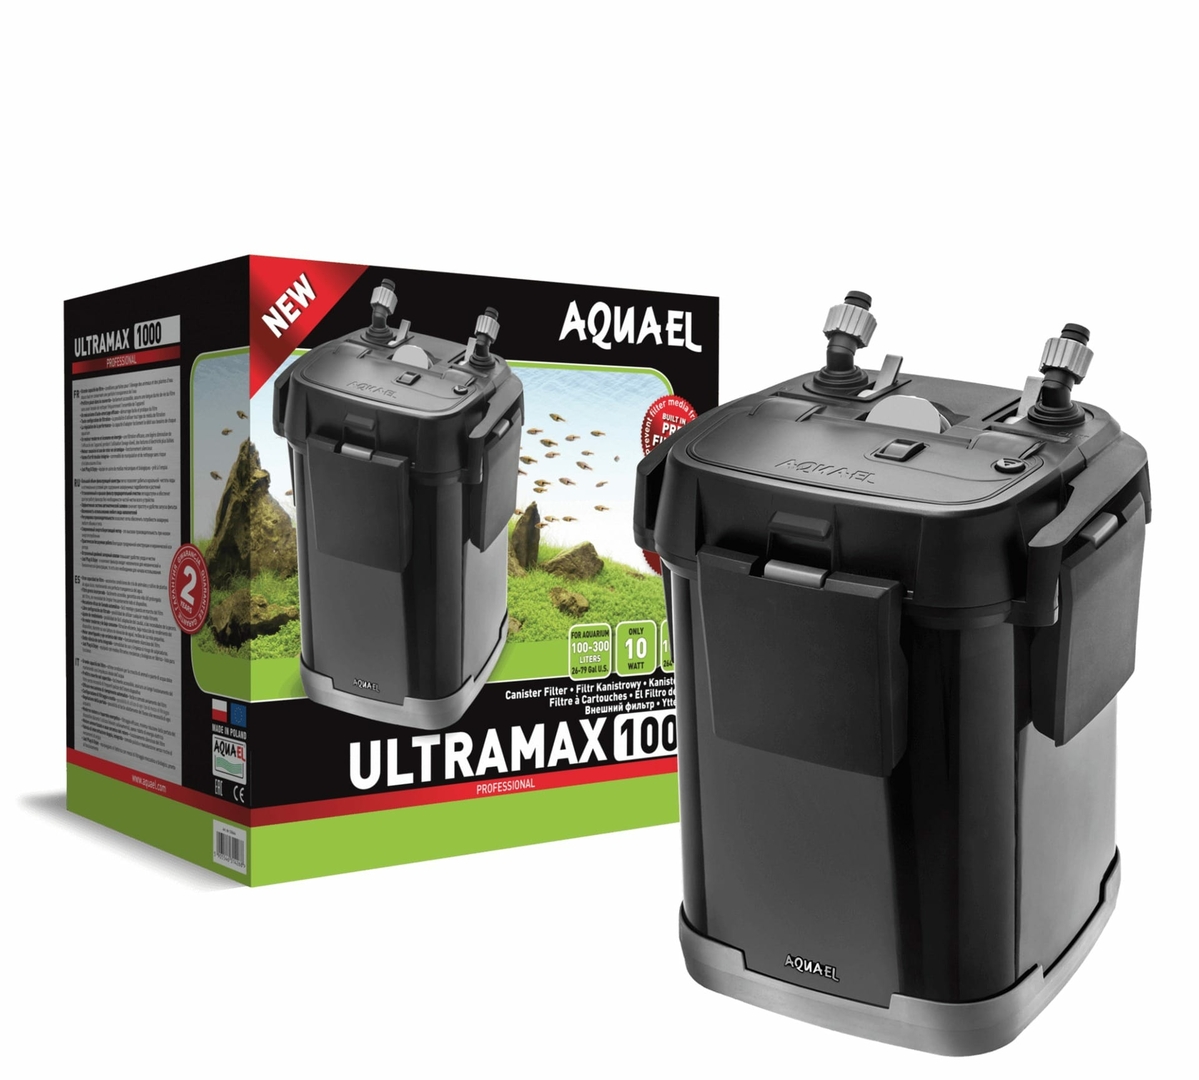 AQUAEL UltraMax 1000 filtre externe complet pour aquarium de 100 à